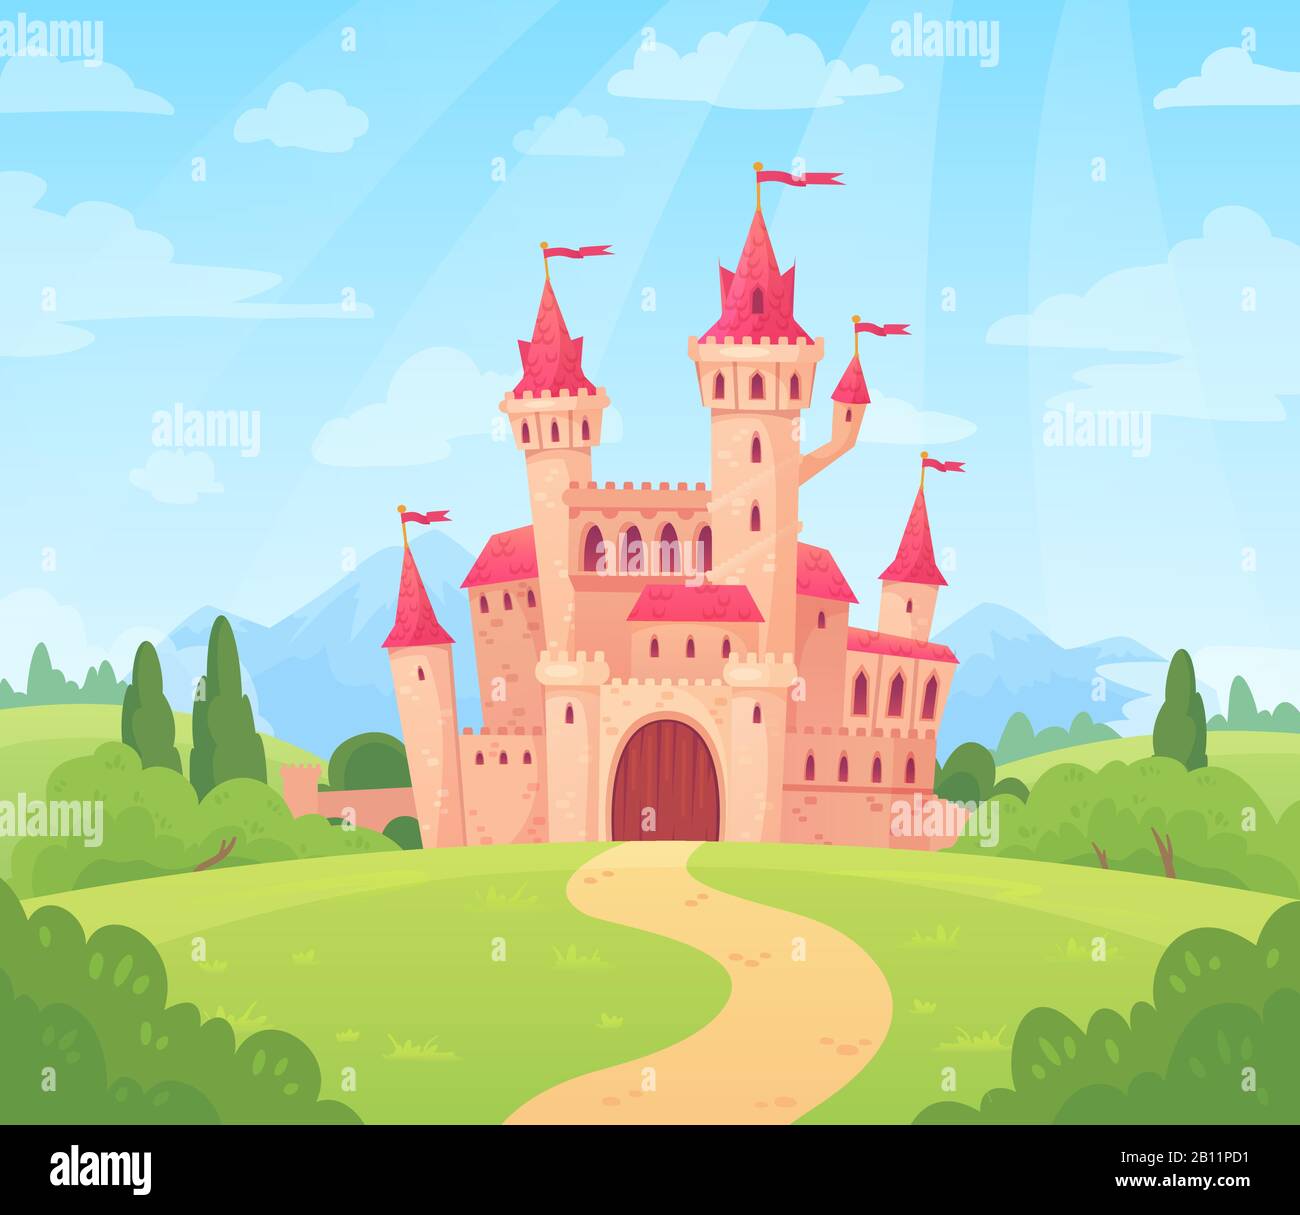 Märchenhafte Landschaft mit Schloss. Fantasy-Palast-Turm, fantastisches Feenhaus oder magische Burgen Königreich Cartoon Vektor-Hintergrund Stock Vektor